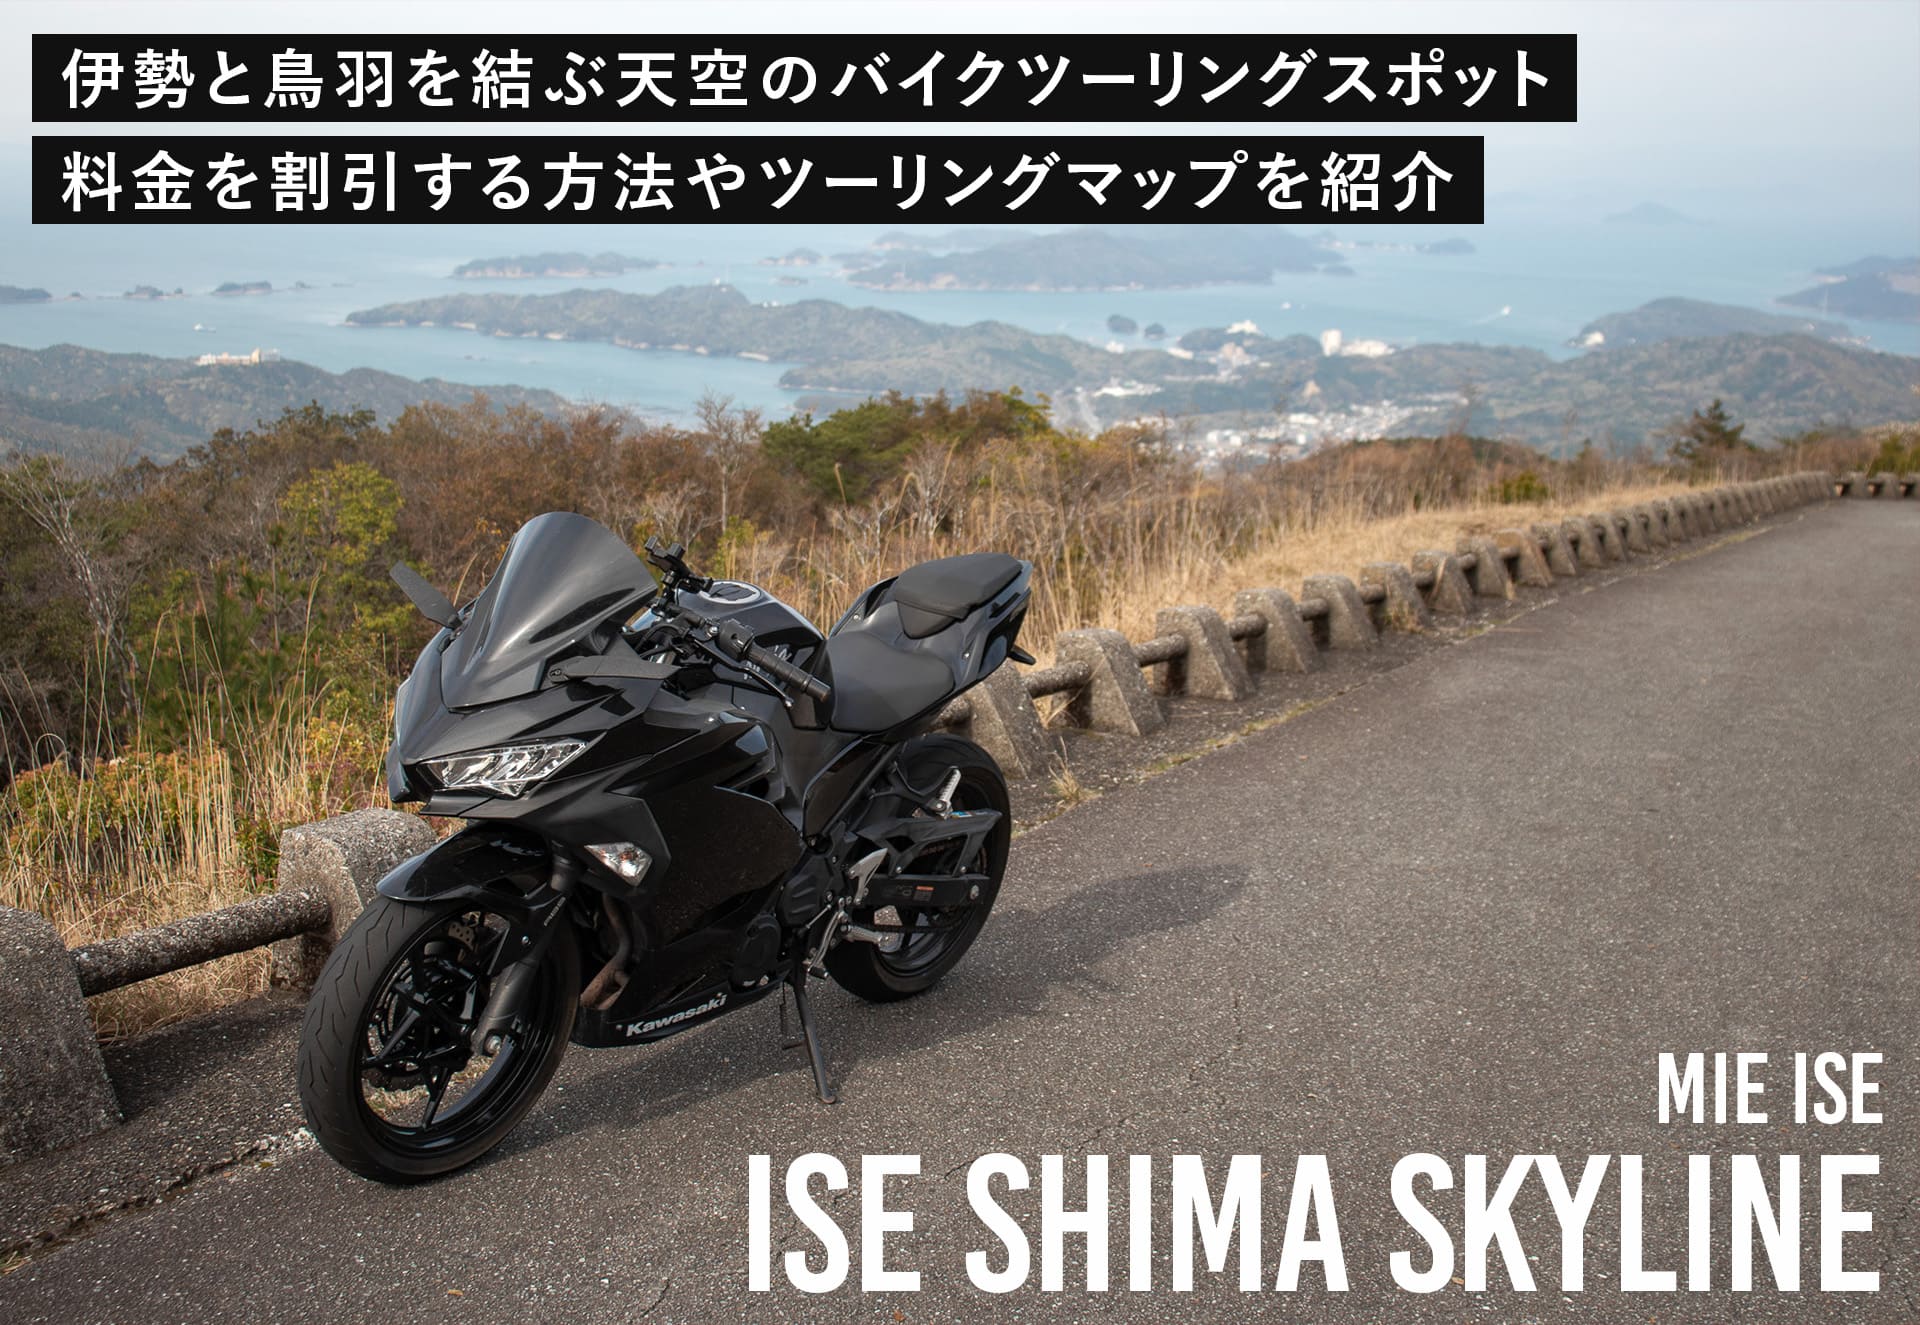 伊勢志摩スカイライン山頂から撮影したバイク写真